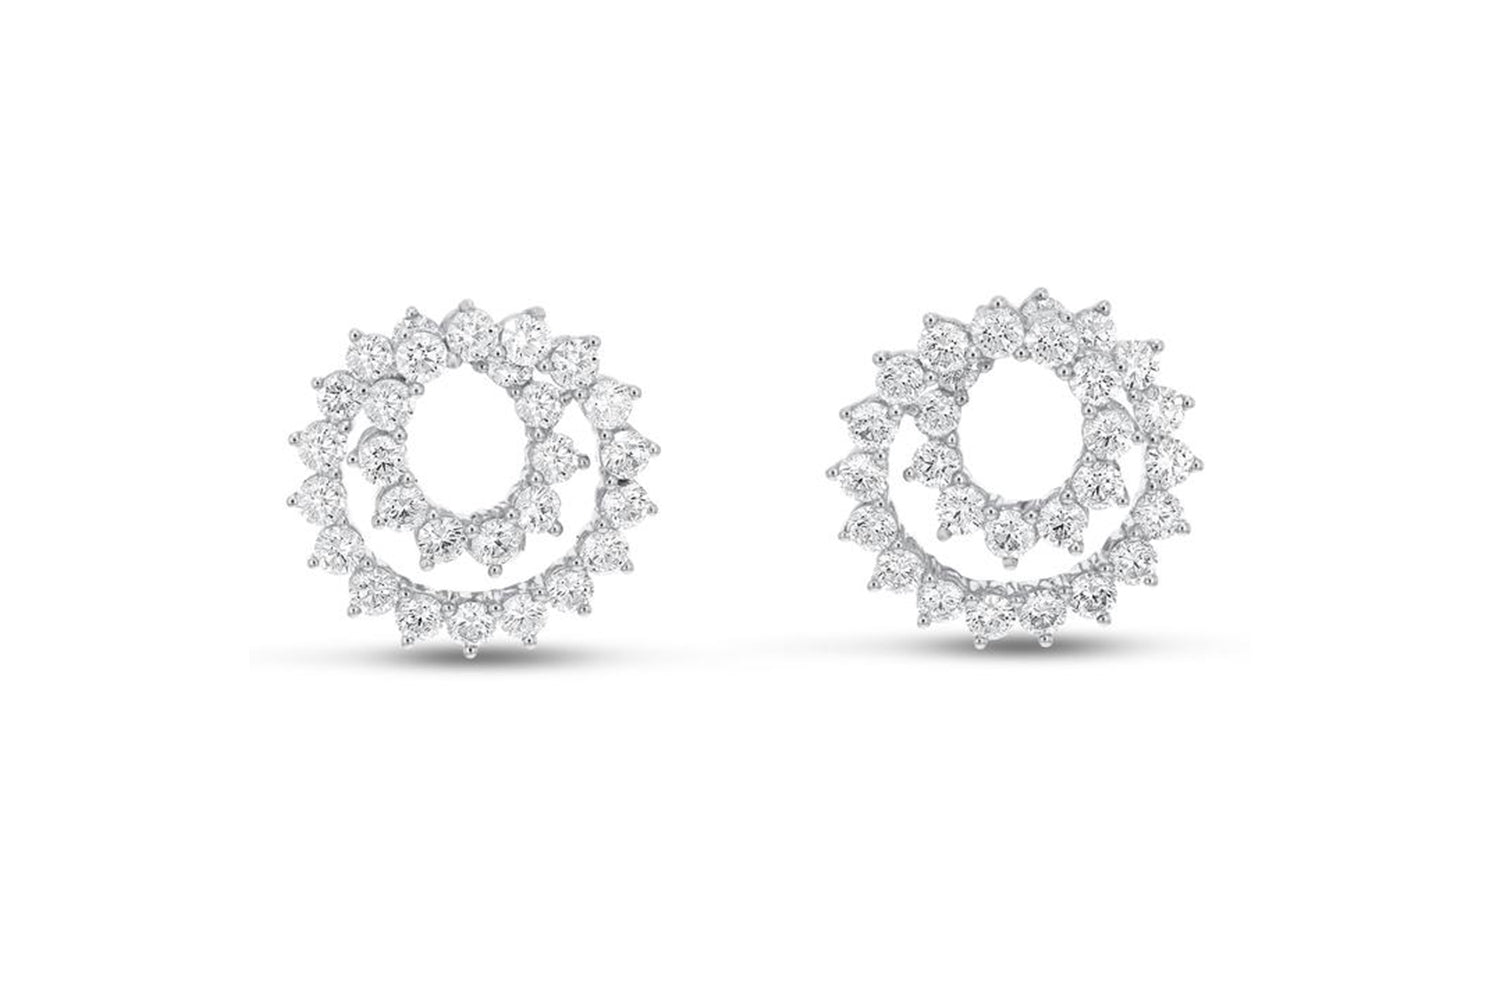 'SummerRae' 18K White Gold Diamond Earrings, 4.14 Carats